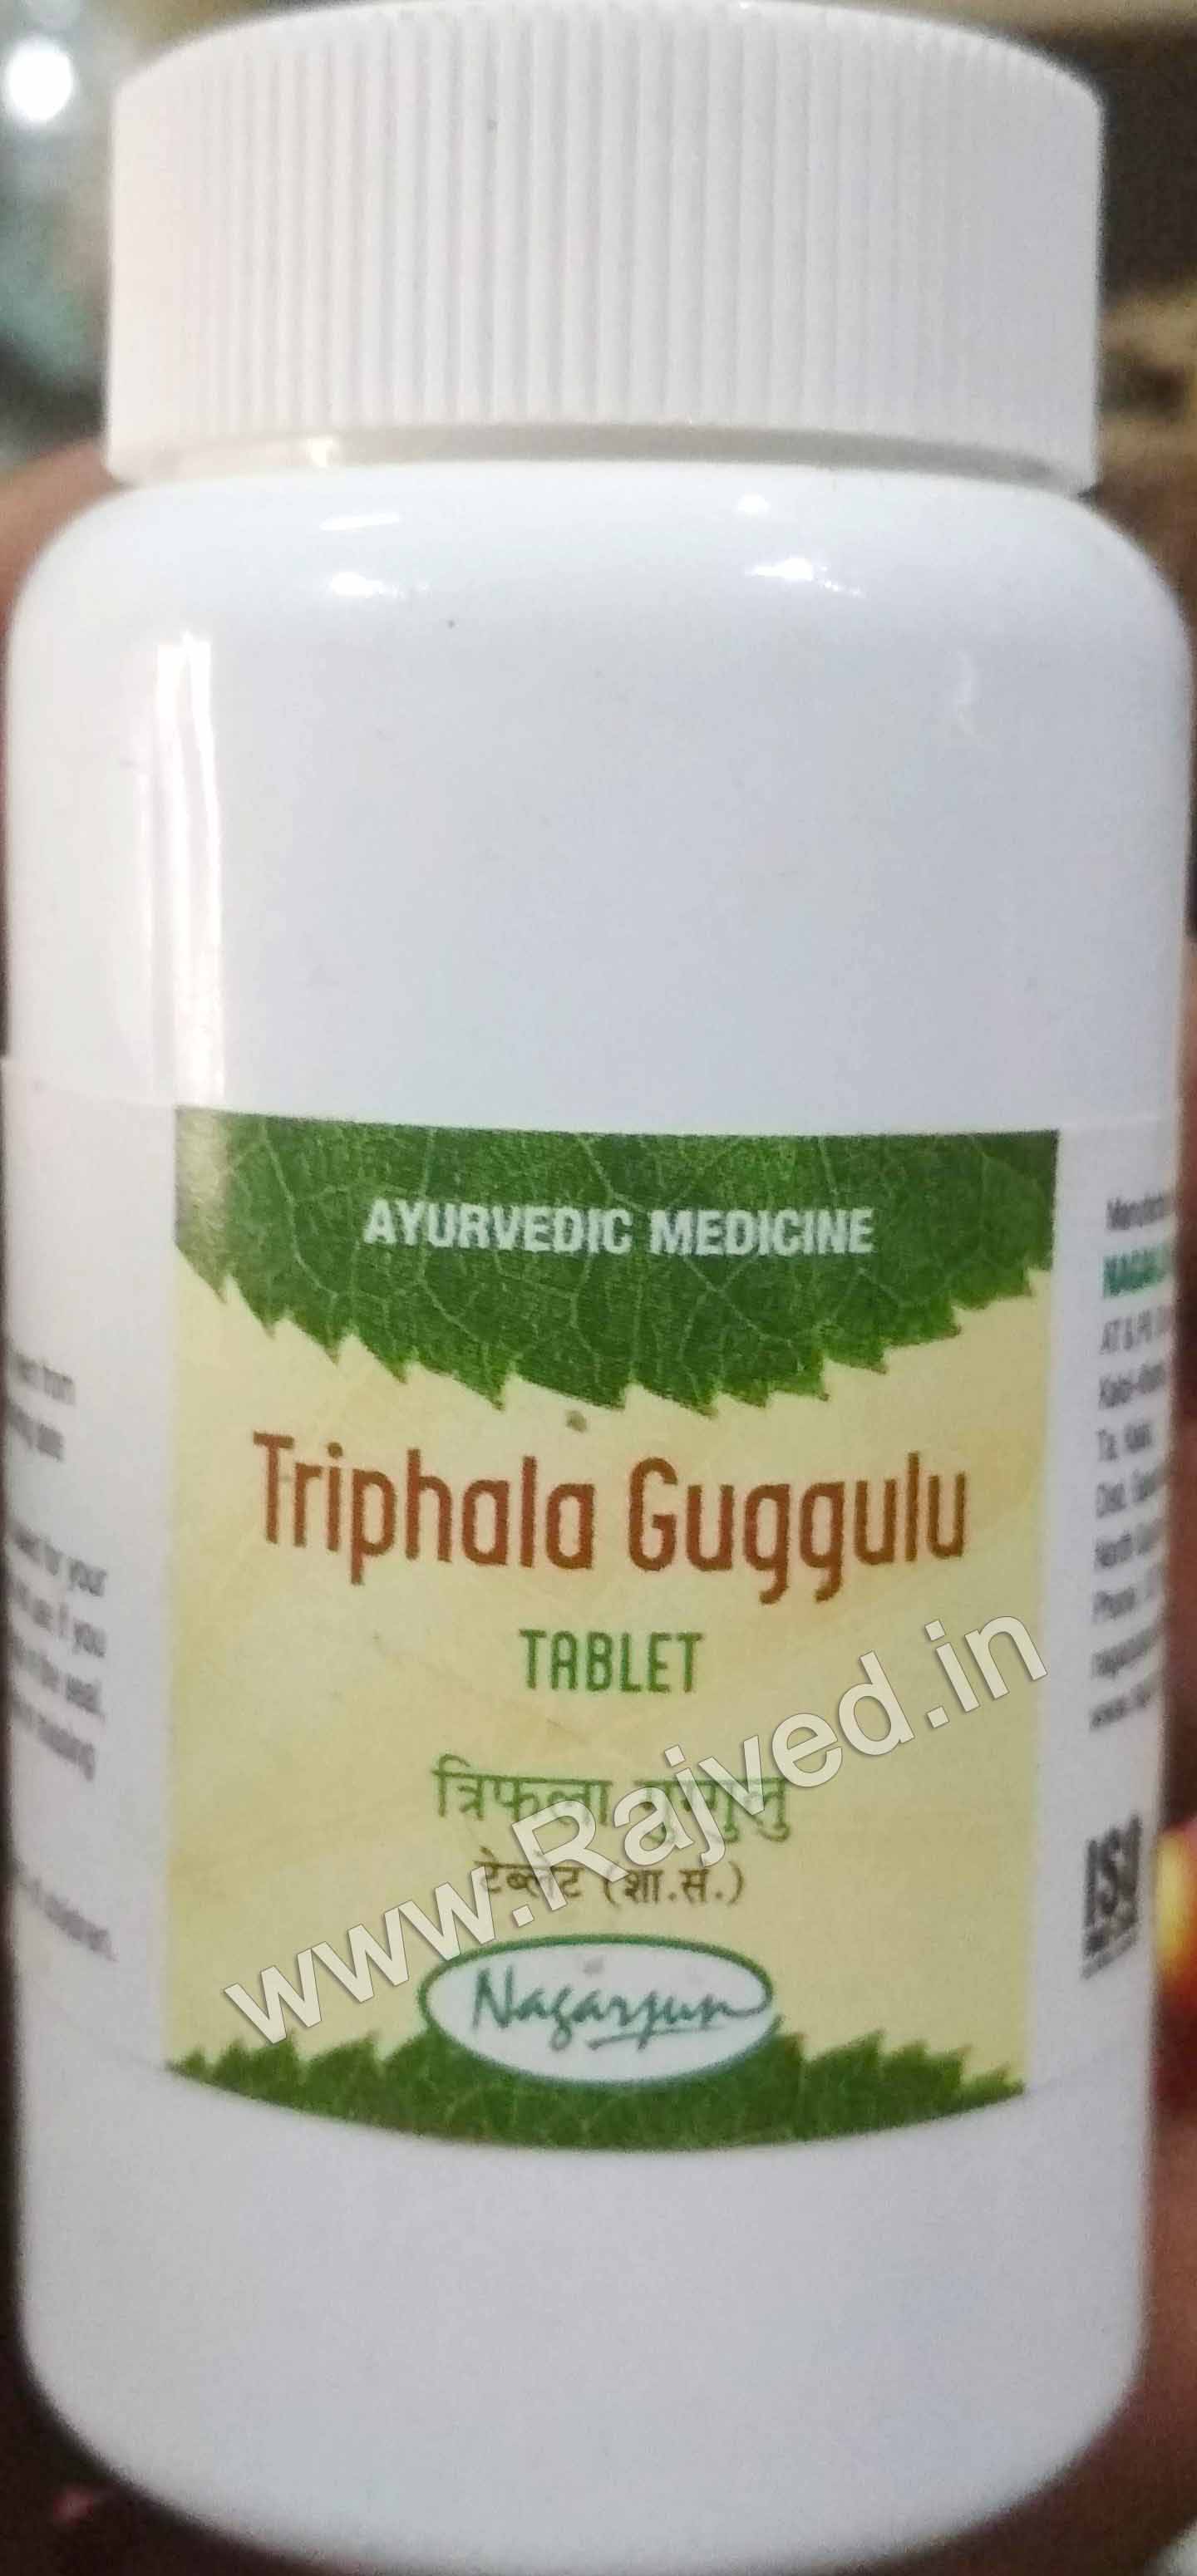 medohar guggul 2000 tab upto 20% off free shipping nagarjuna pharma gujarat